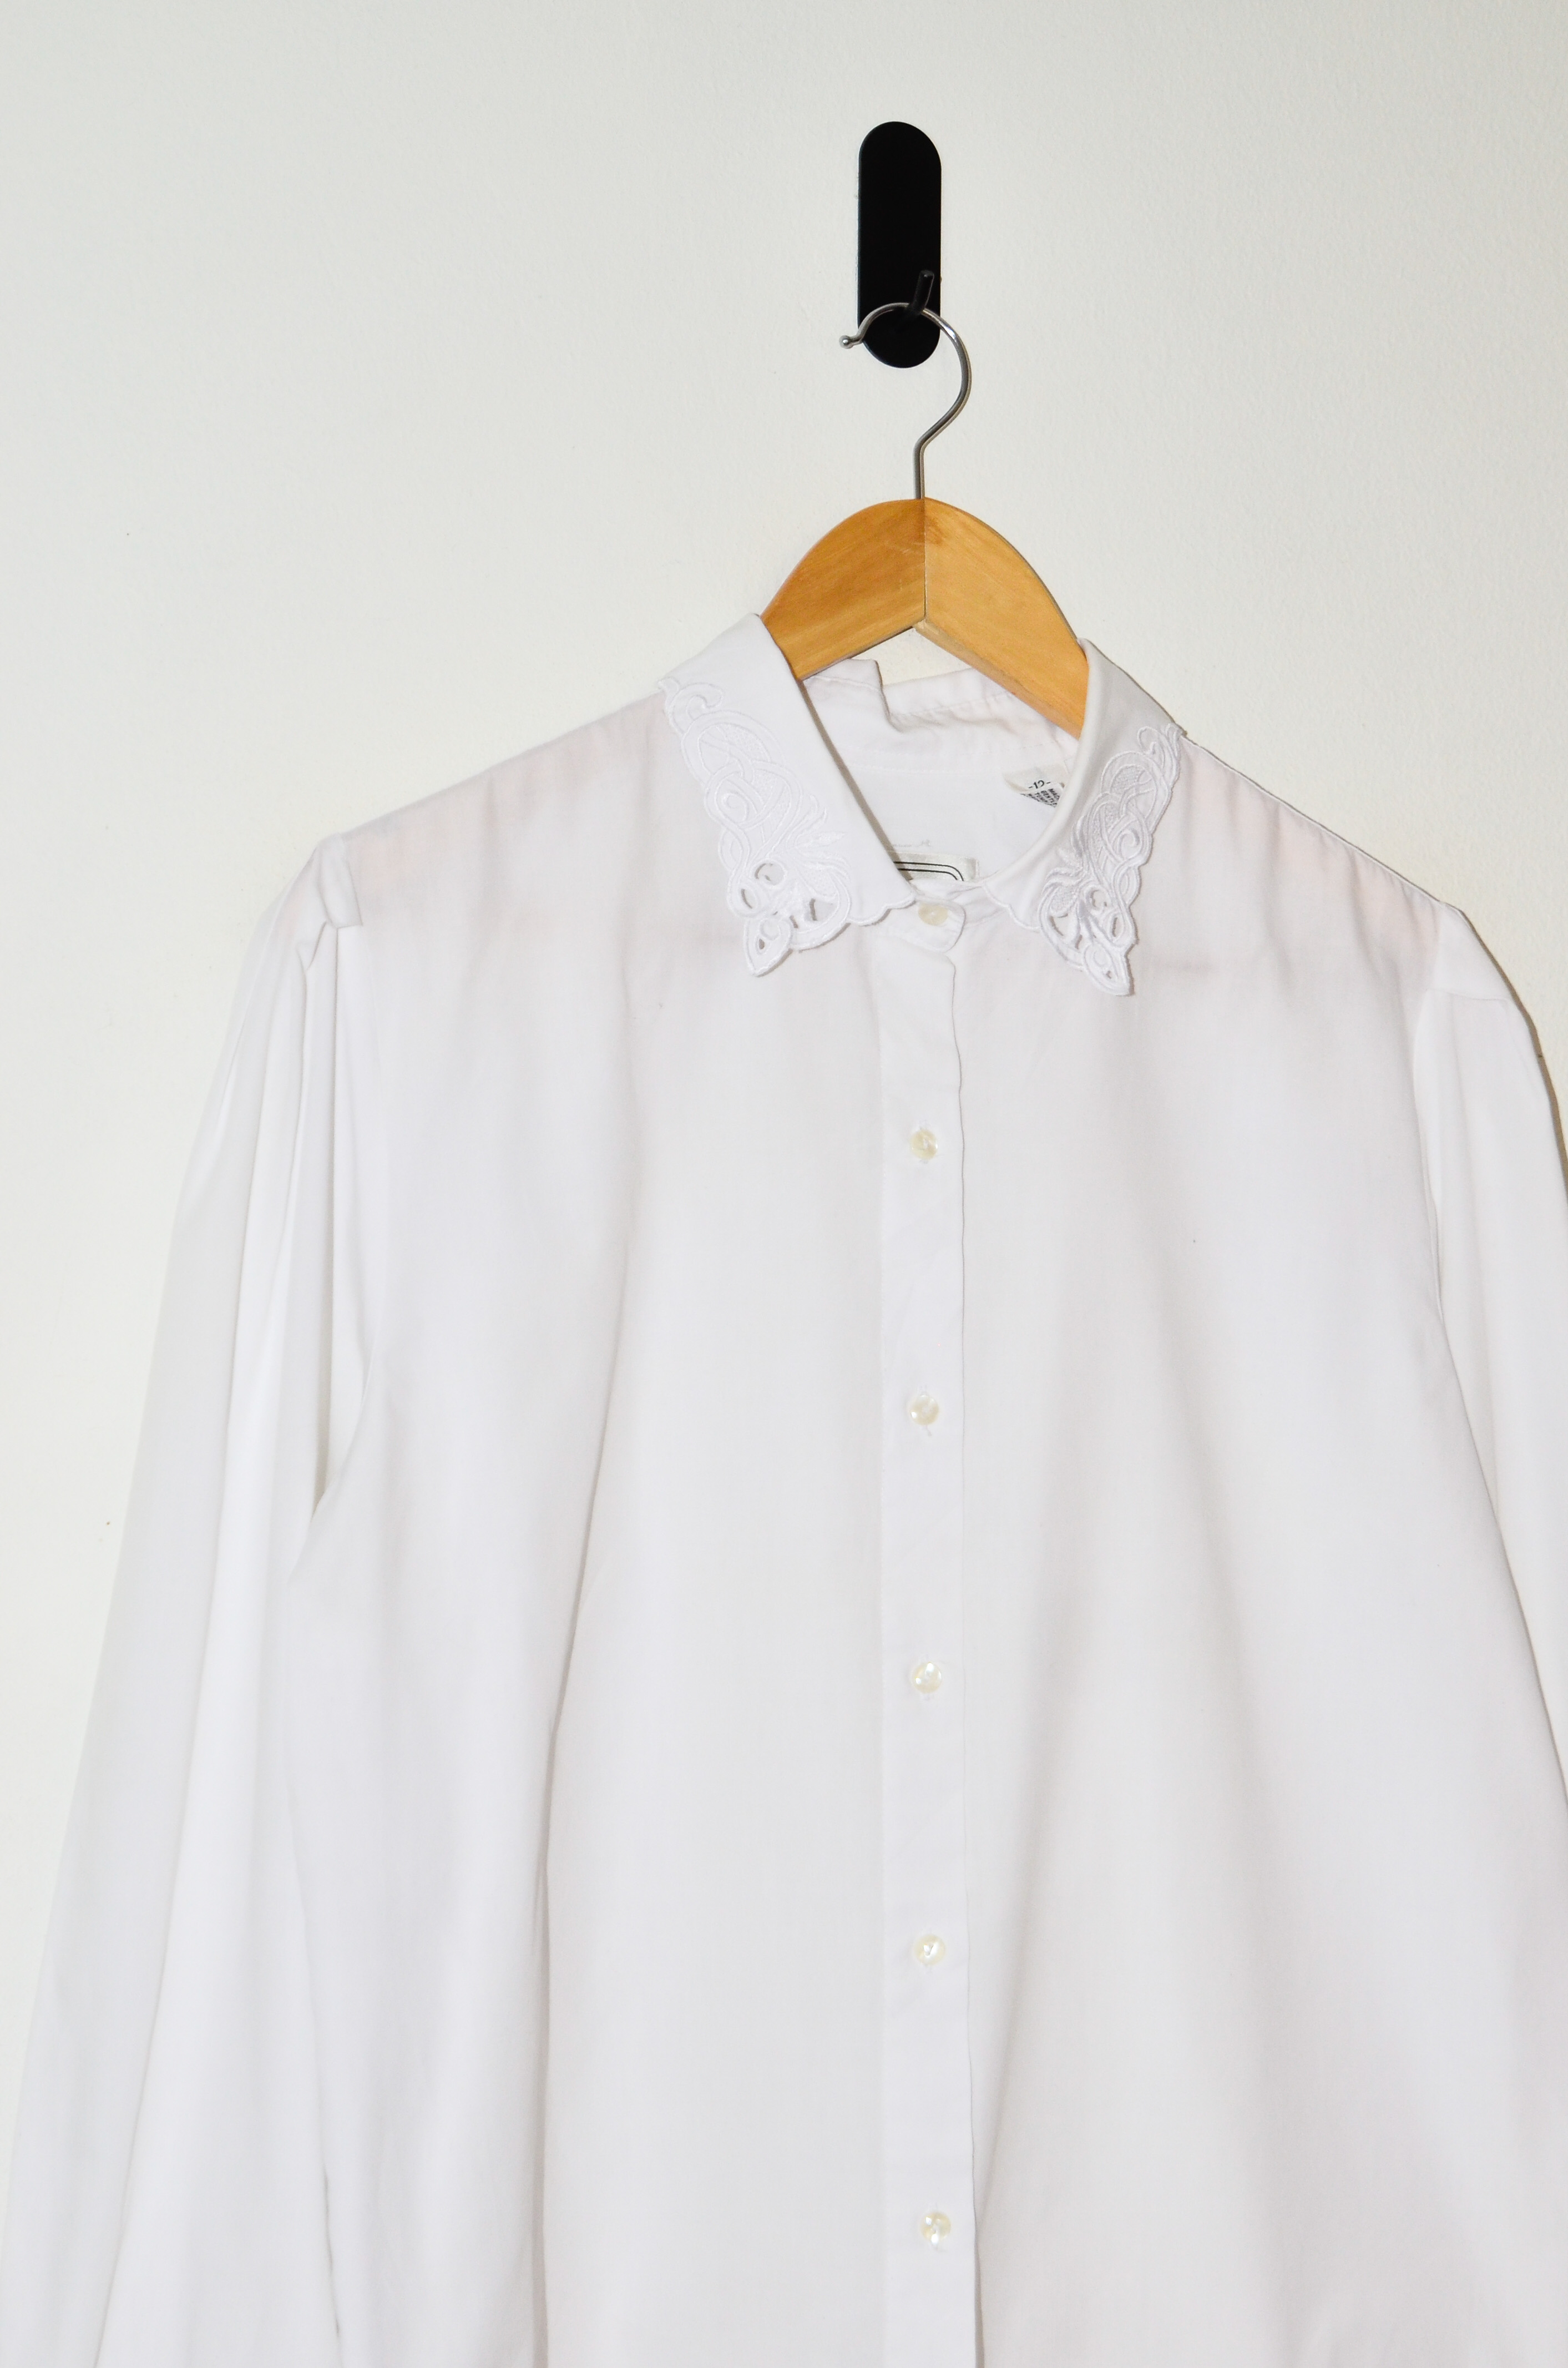 Blusa blanca cuellito bordado